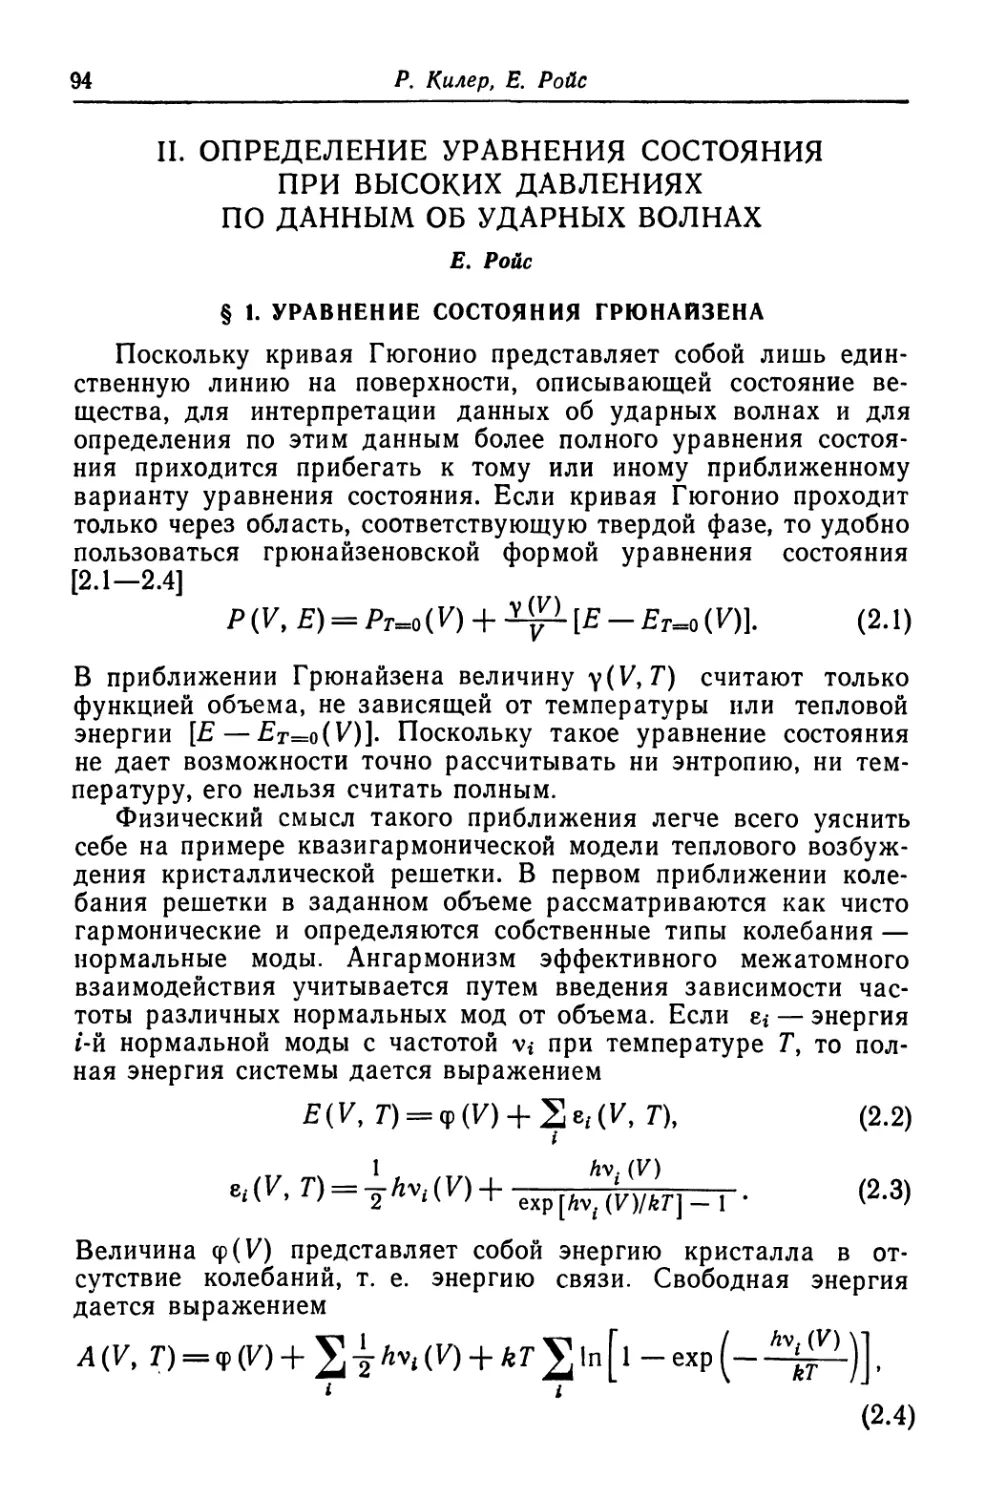 § 1. Уравнение состояния Грюнайзена